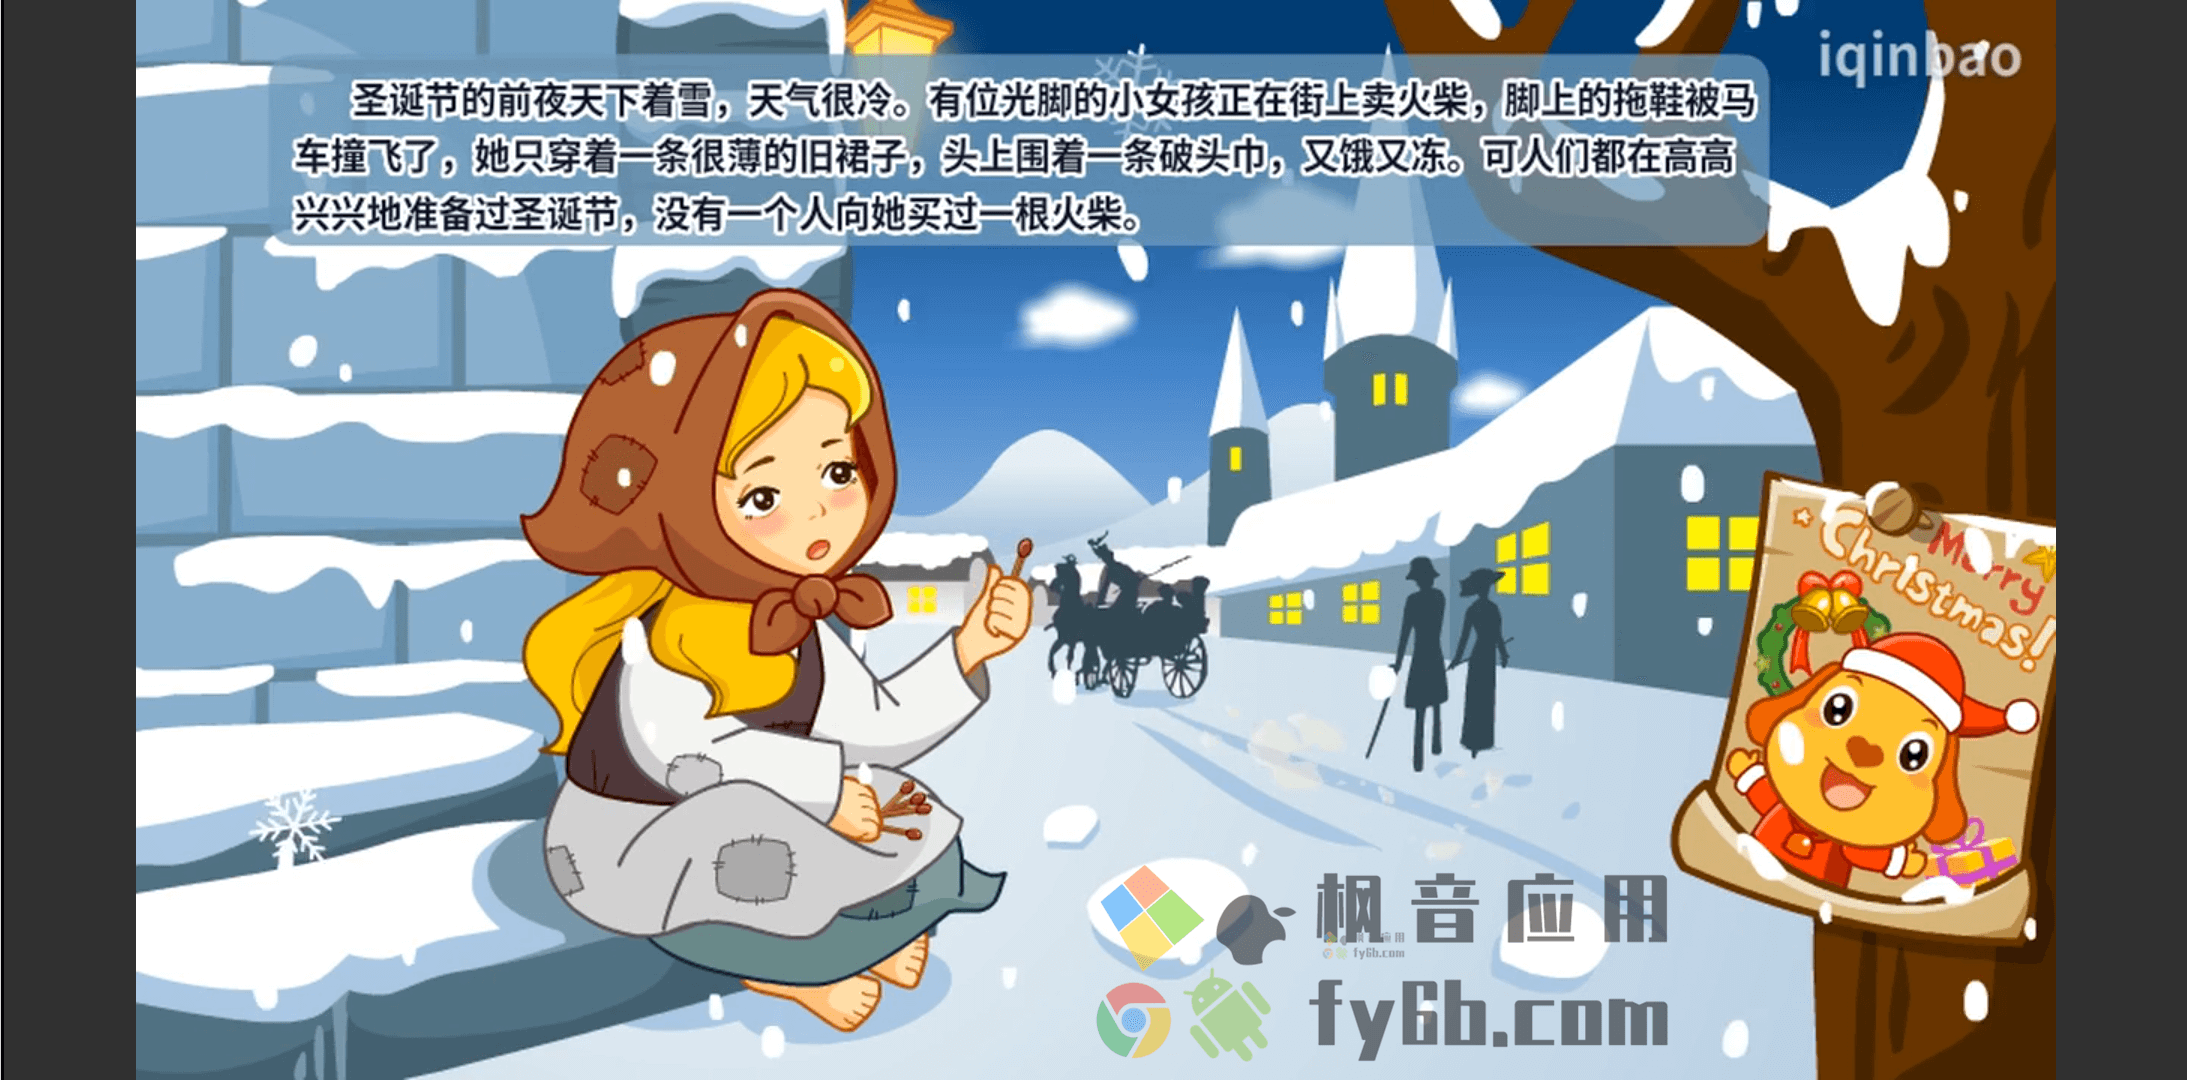 Android 亲宝故事会_v2.0.3 TV版